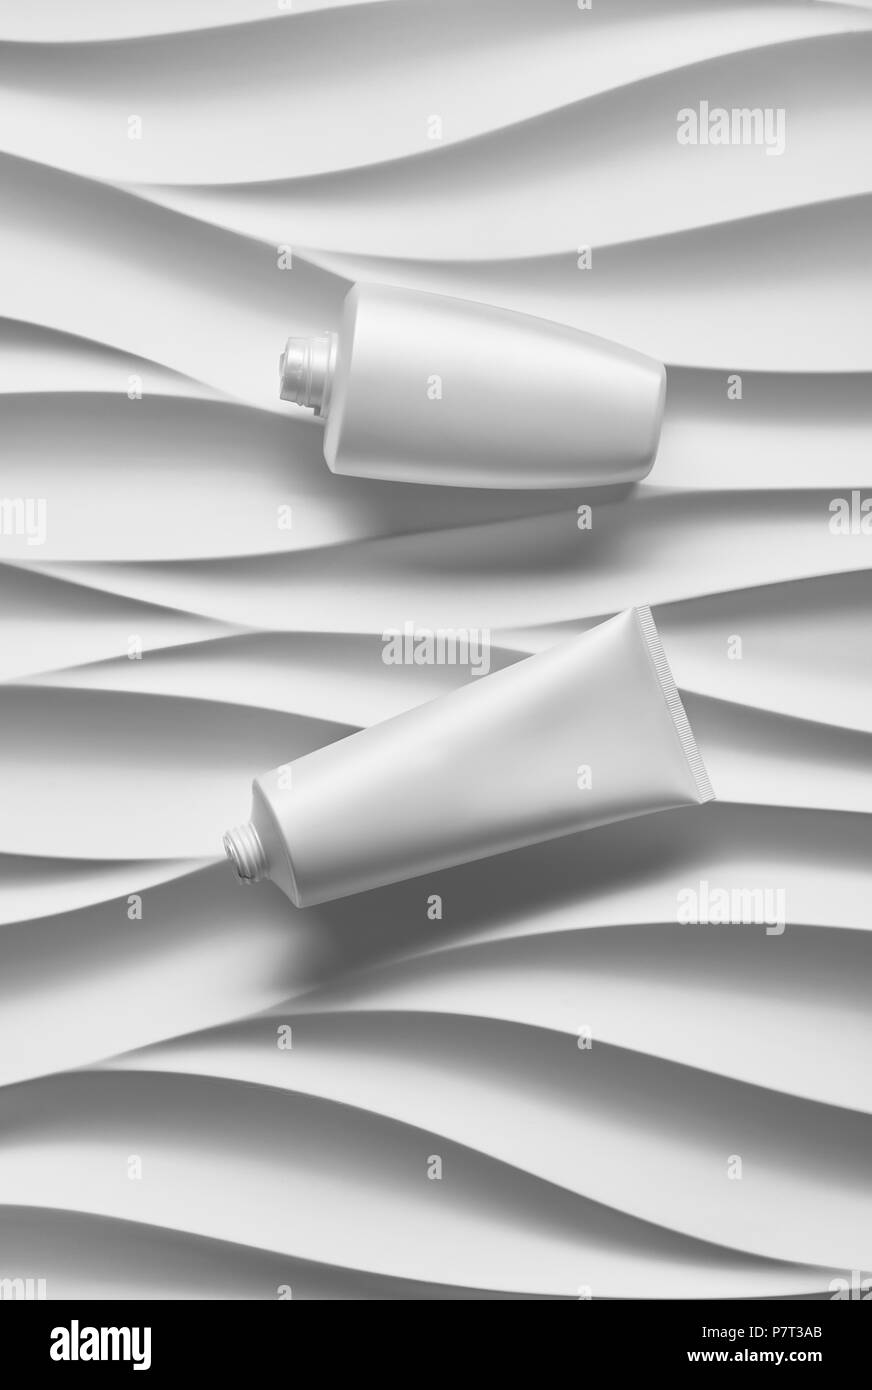 Belle affiche de format avec des vagues gris fond abstrait avec tonalités grisâtre, avec des contenants de plastique blanc propre : pot de crème, bouteilles, t Banque D'Images